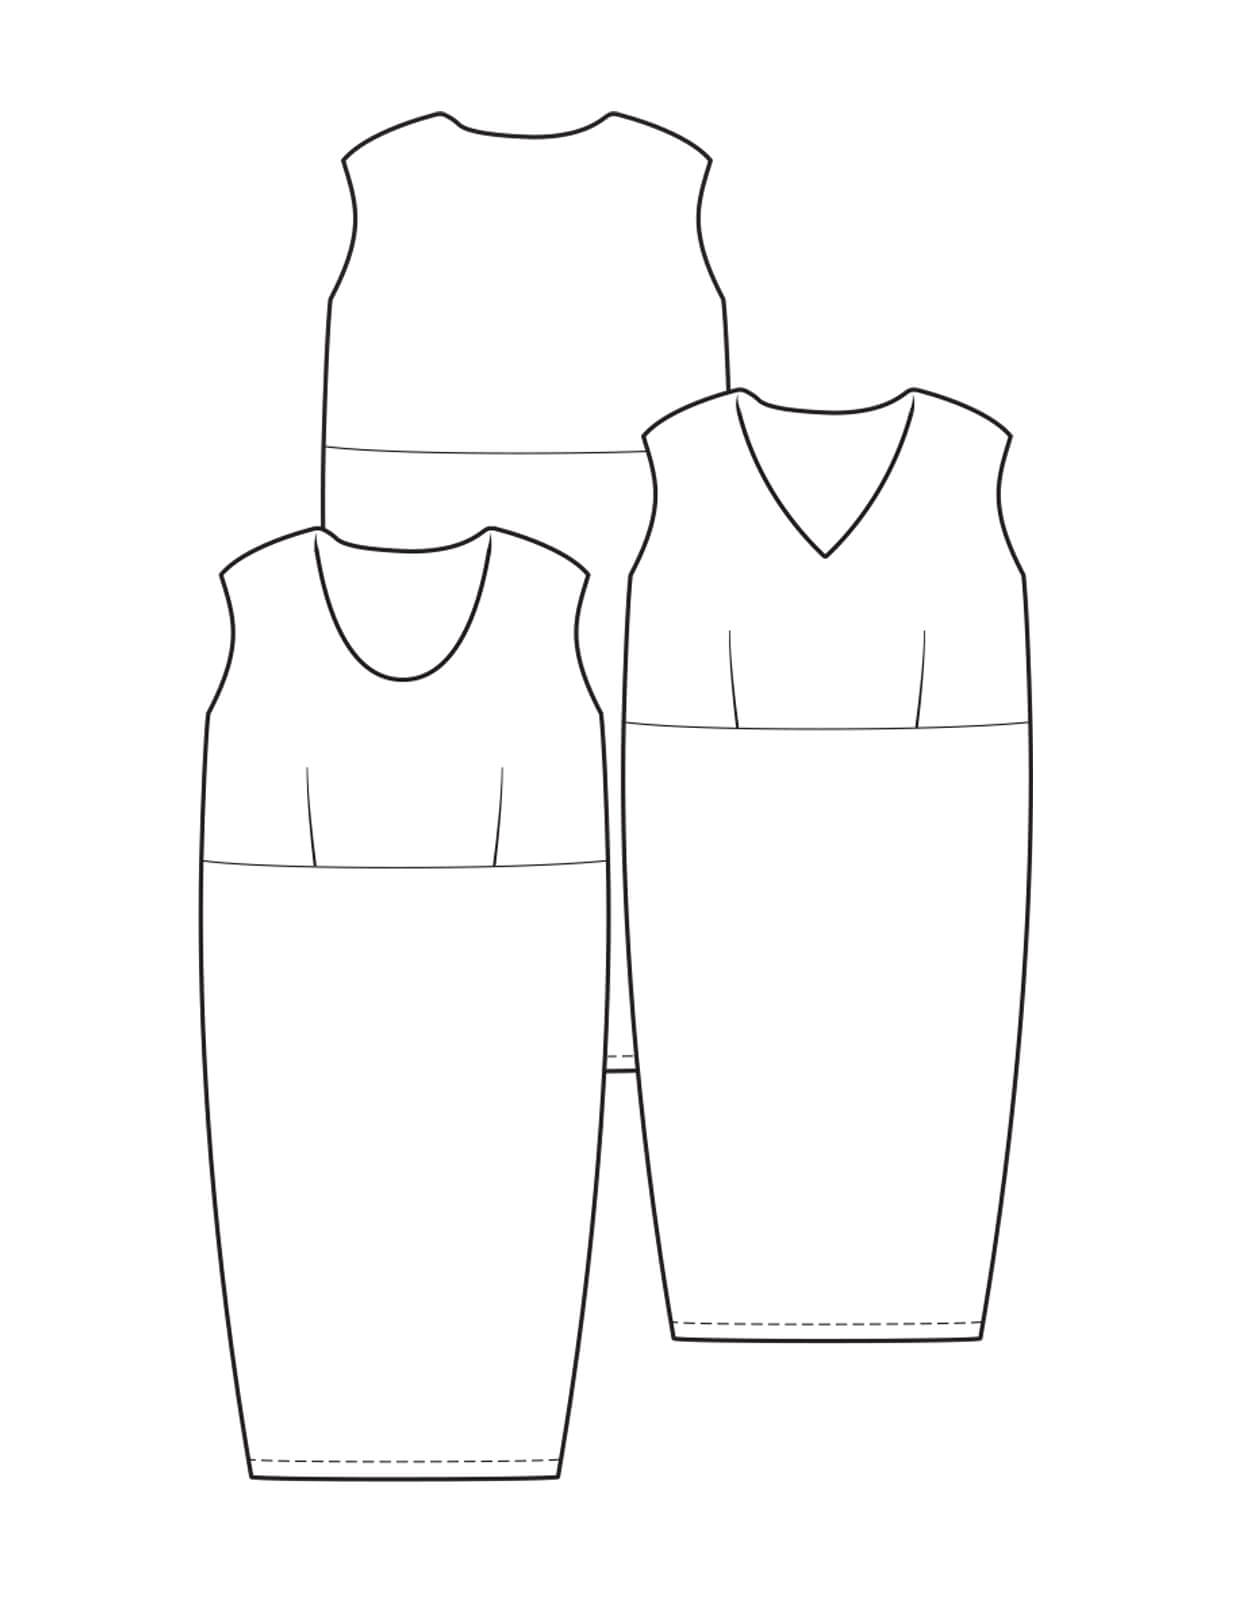 The Maker's Atelier Slip Dress